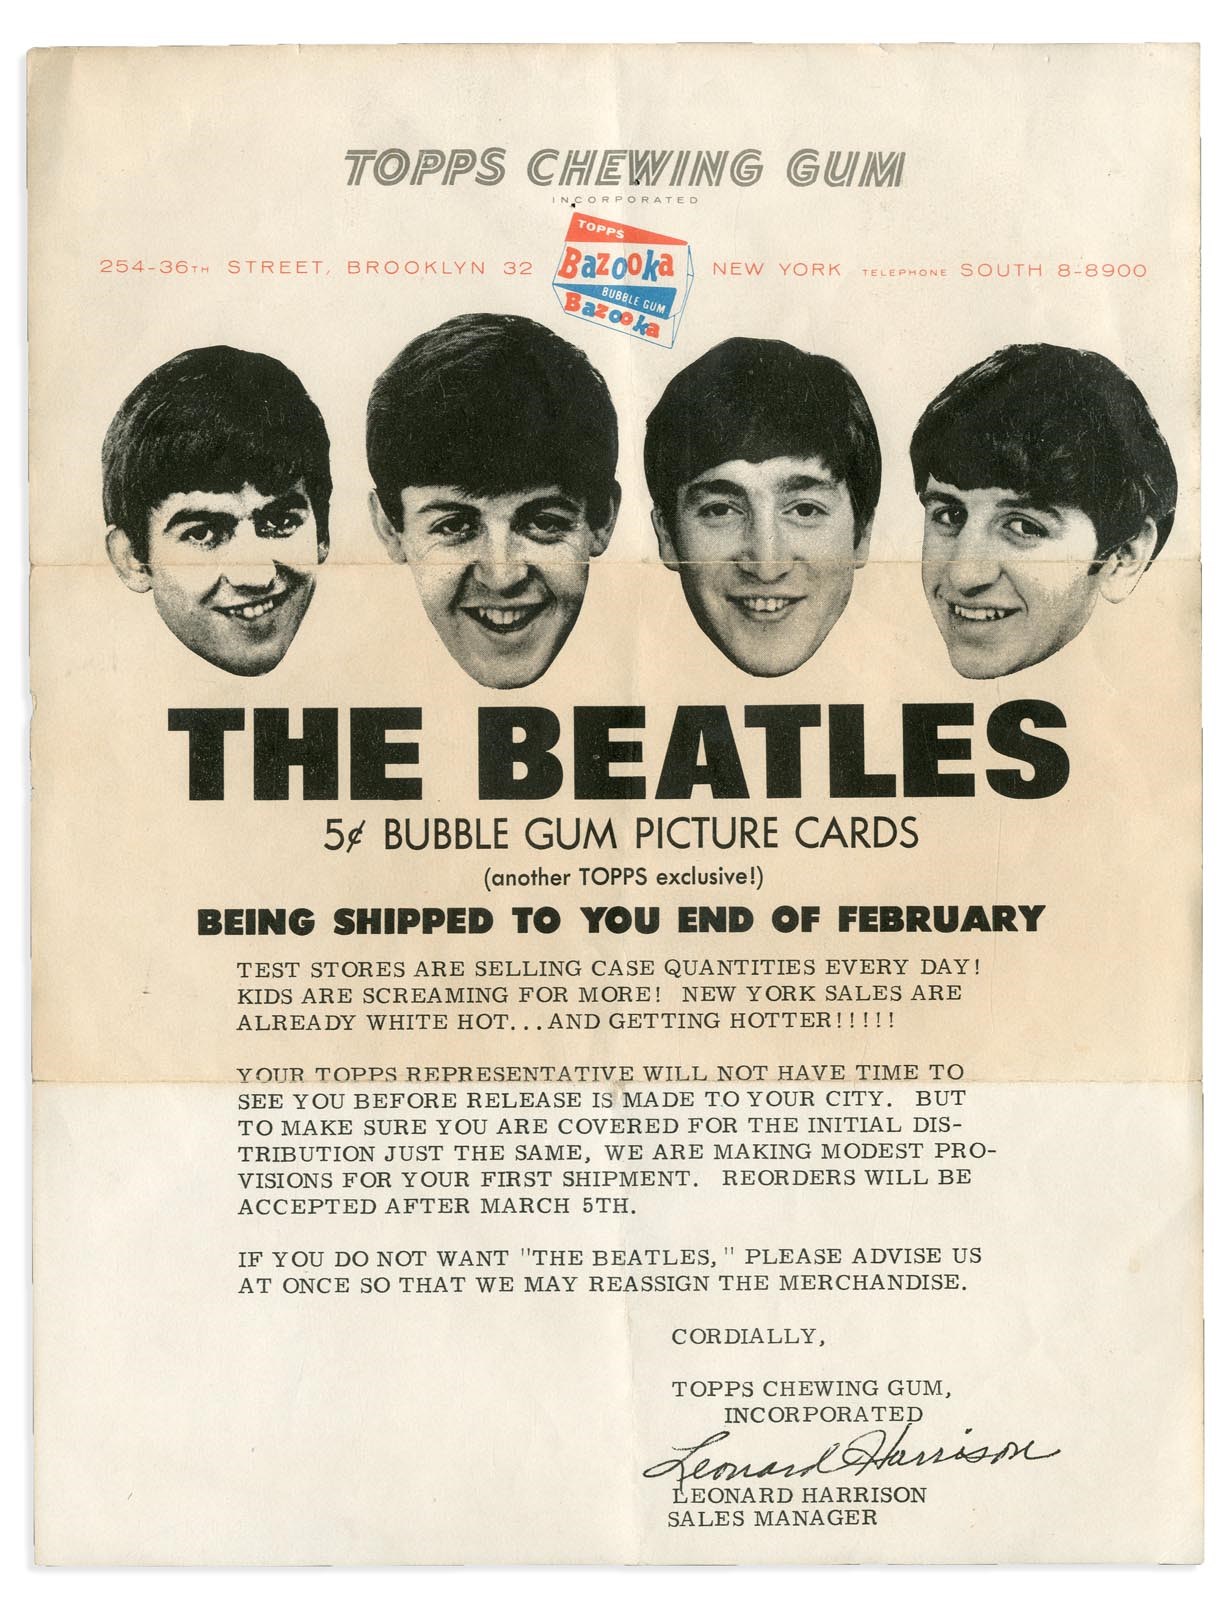 1964 Topps The Beatles Gum Card "Case" Insert